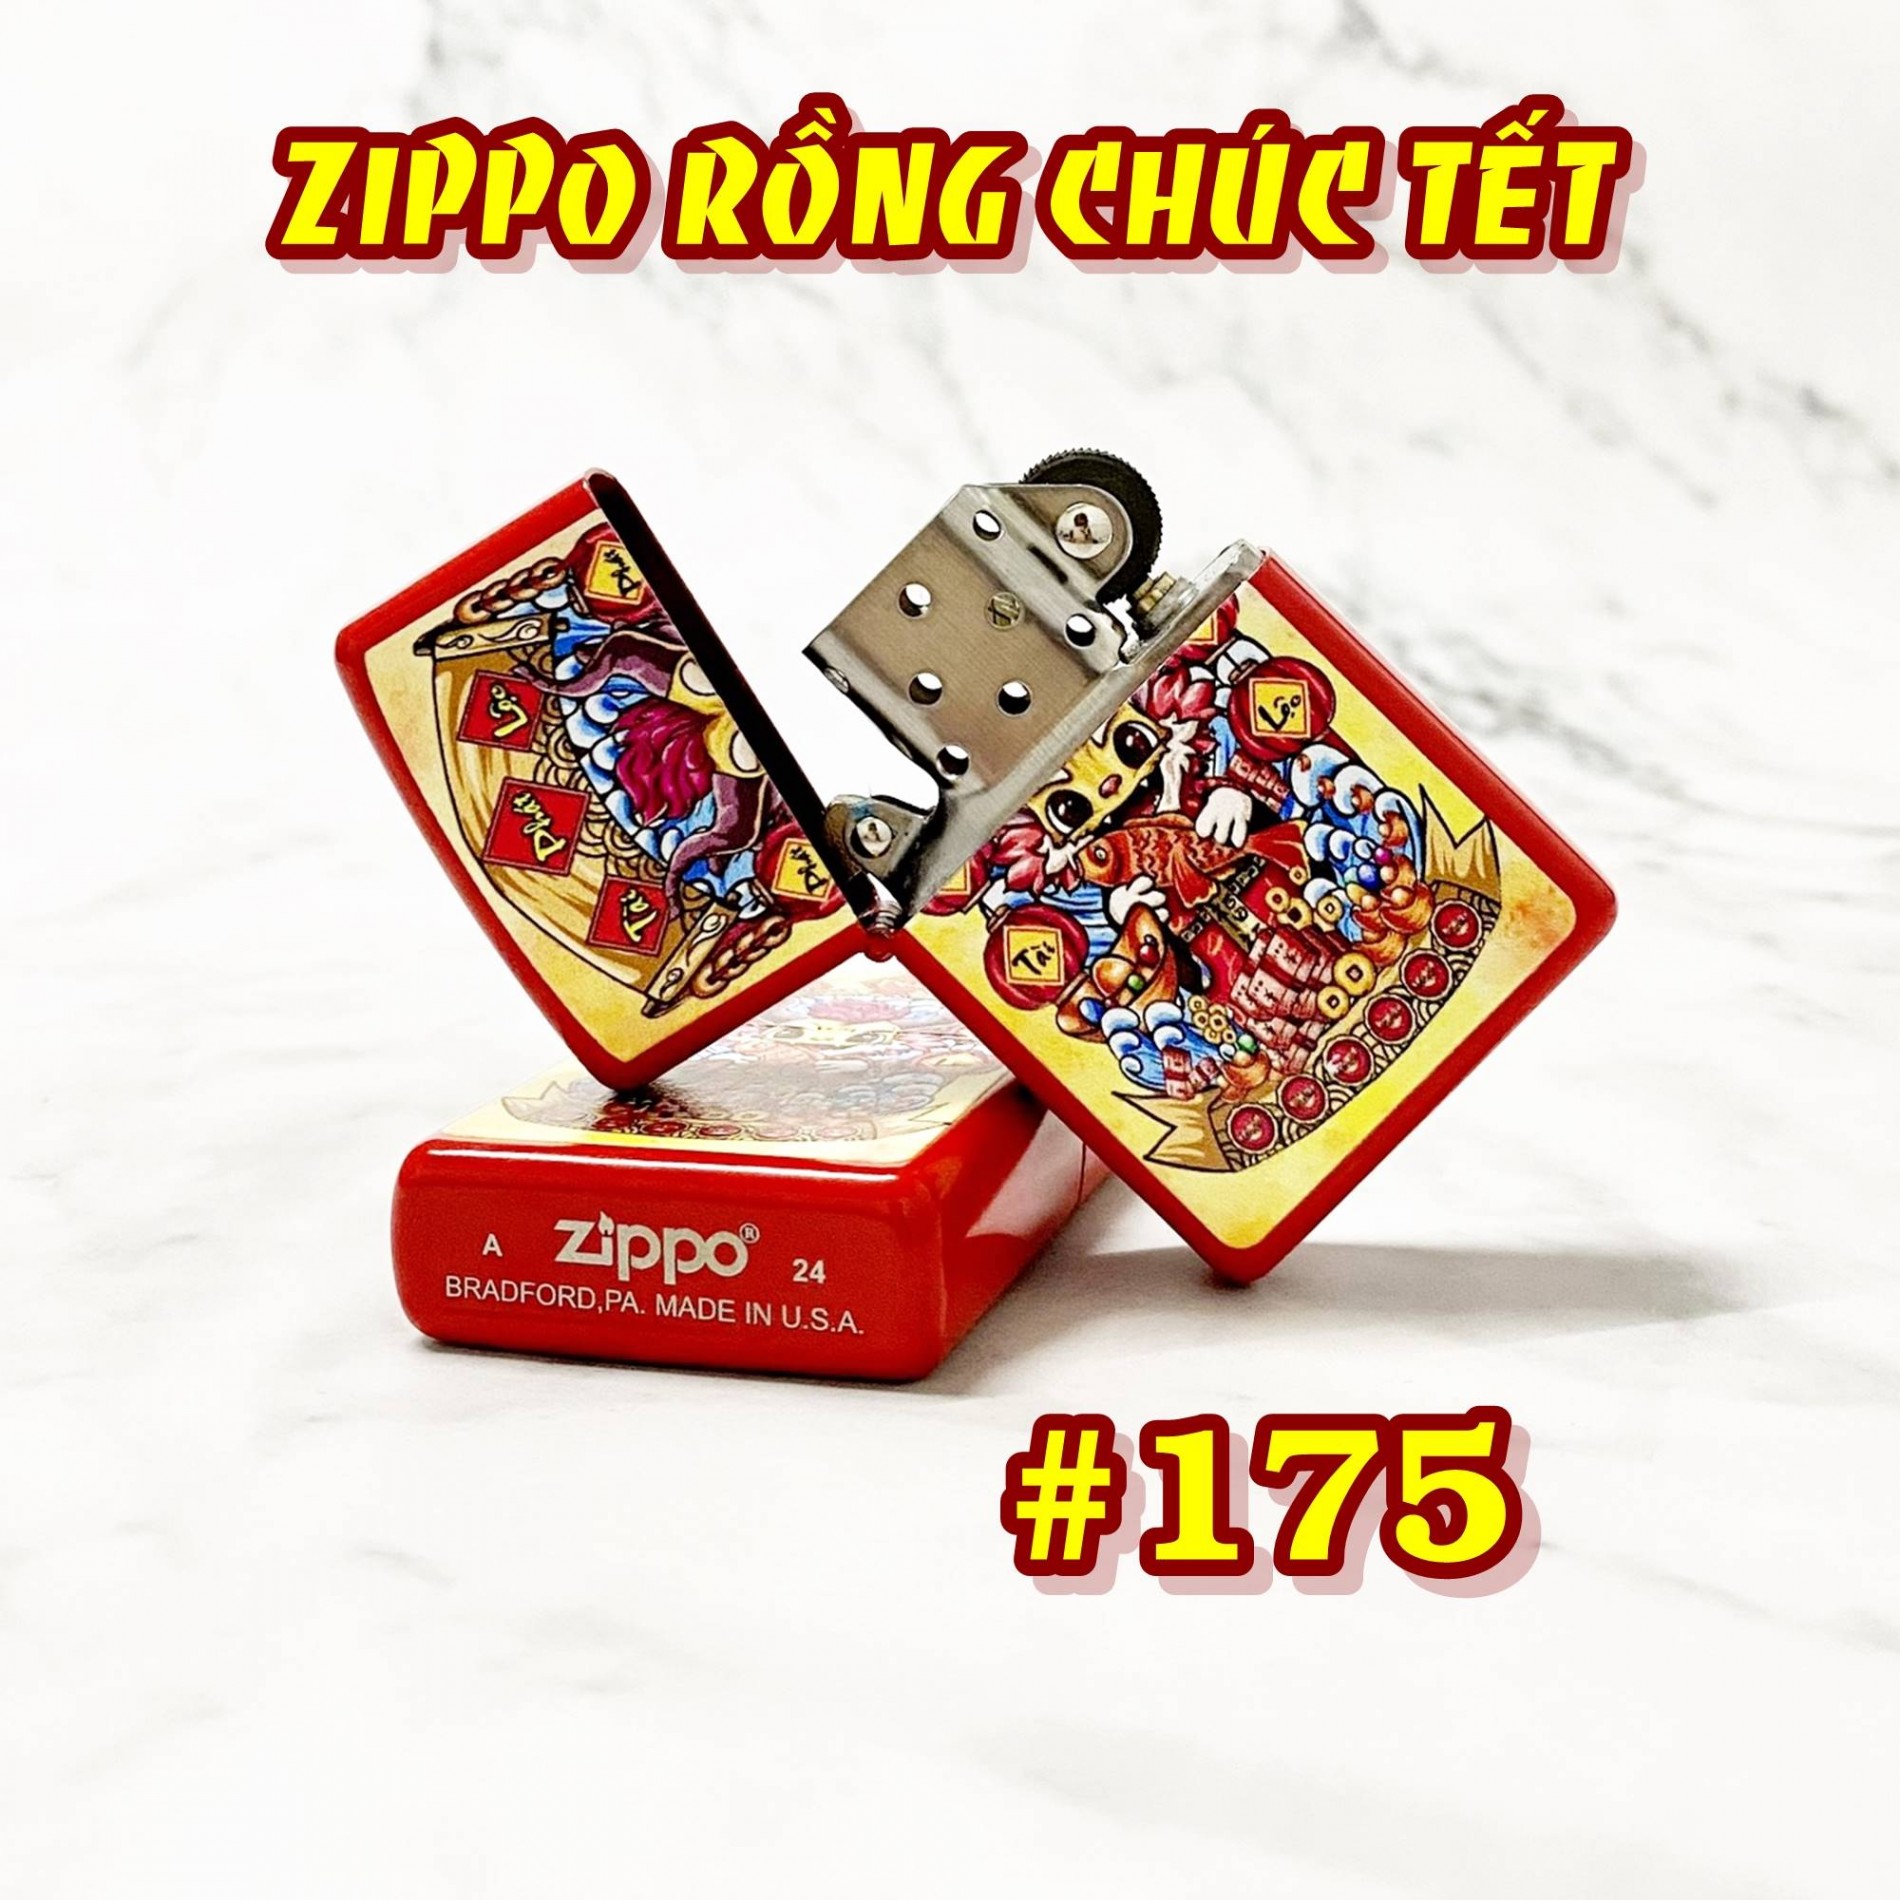 zippo_rong_chuc_tet_175